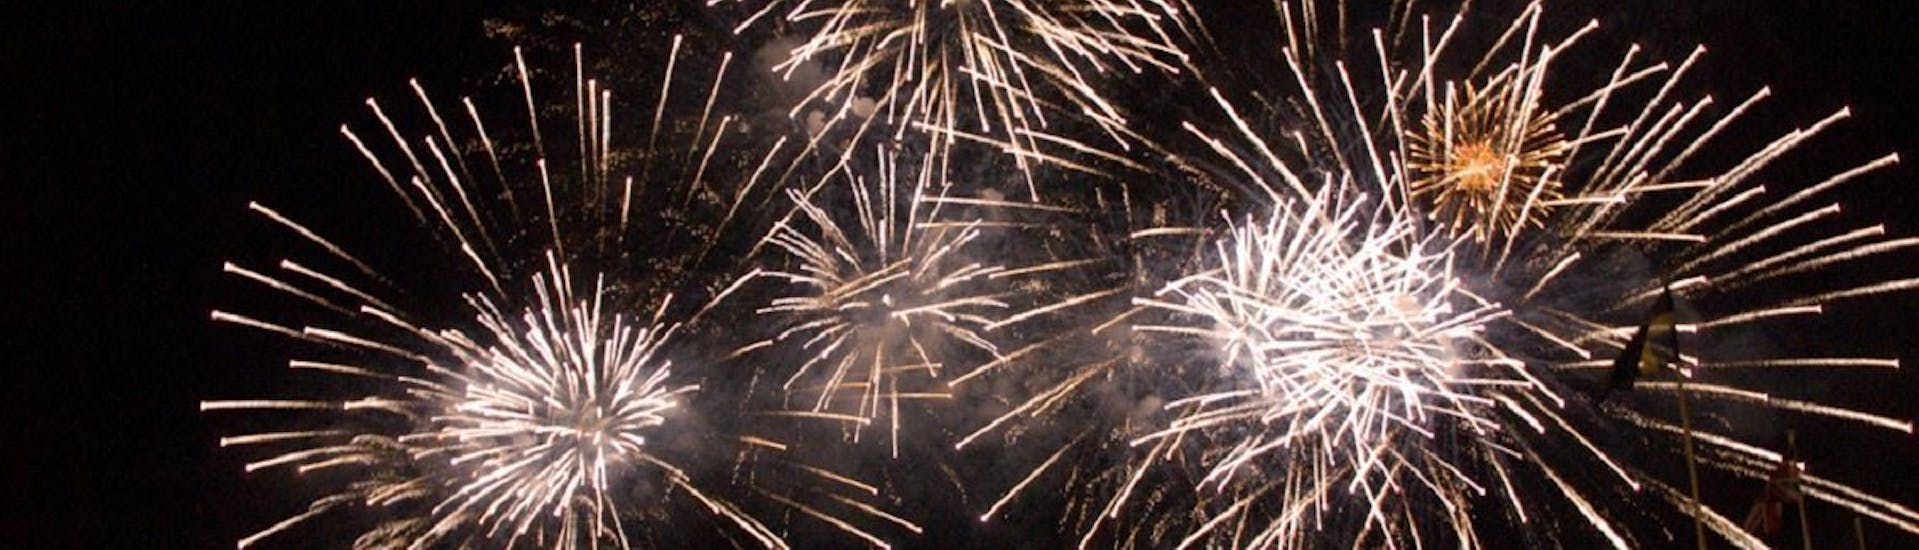 Bella foto dei fuochi d'artificio della Festa dell'Assunta che si possono ammirare durante la Gita in barca da Sorrento a Positano con spettacolo pirotecnico.